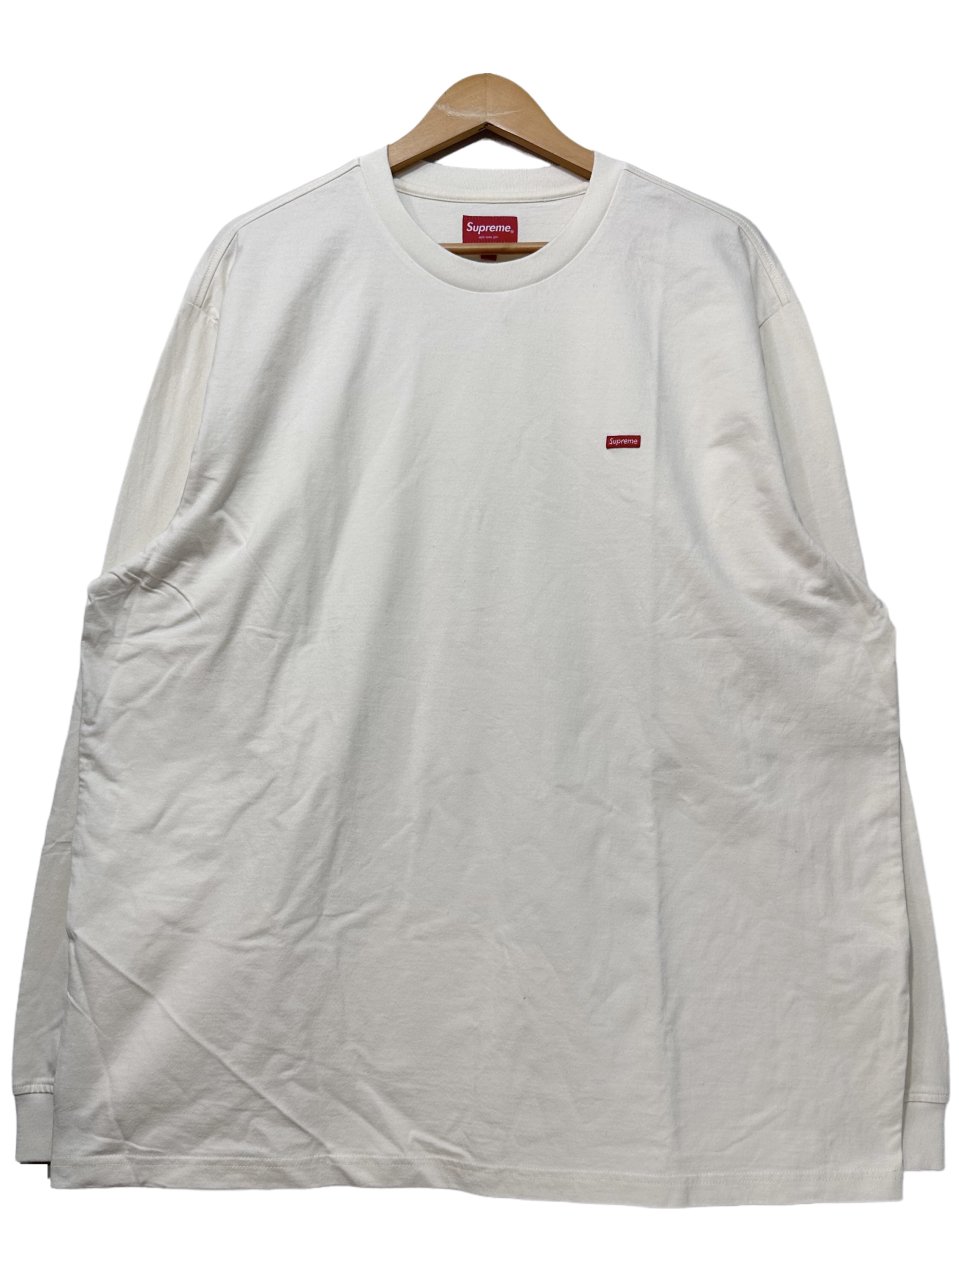 シュプリーム supreme Tシャツ ロンT XL ロゴ - Tシャツ/カットソー